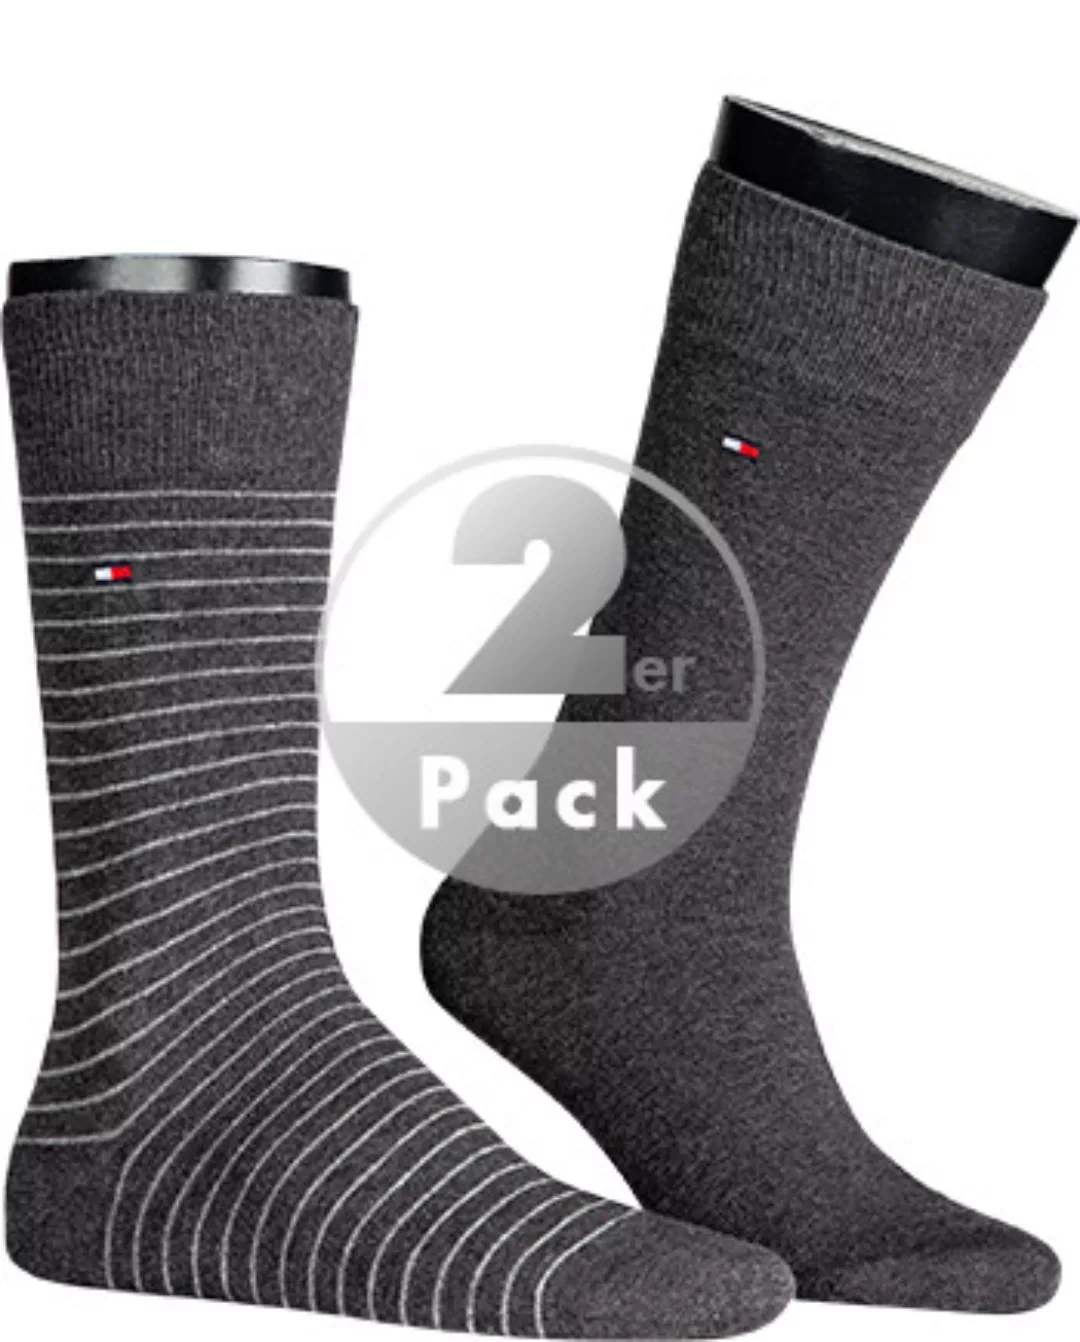 Tommy Hilfiger Small Stripe Classic Socken 2 Paare EU 43-46 Anthracite günstig online kaufen